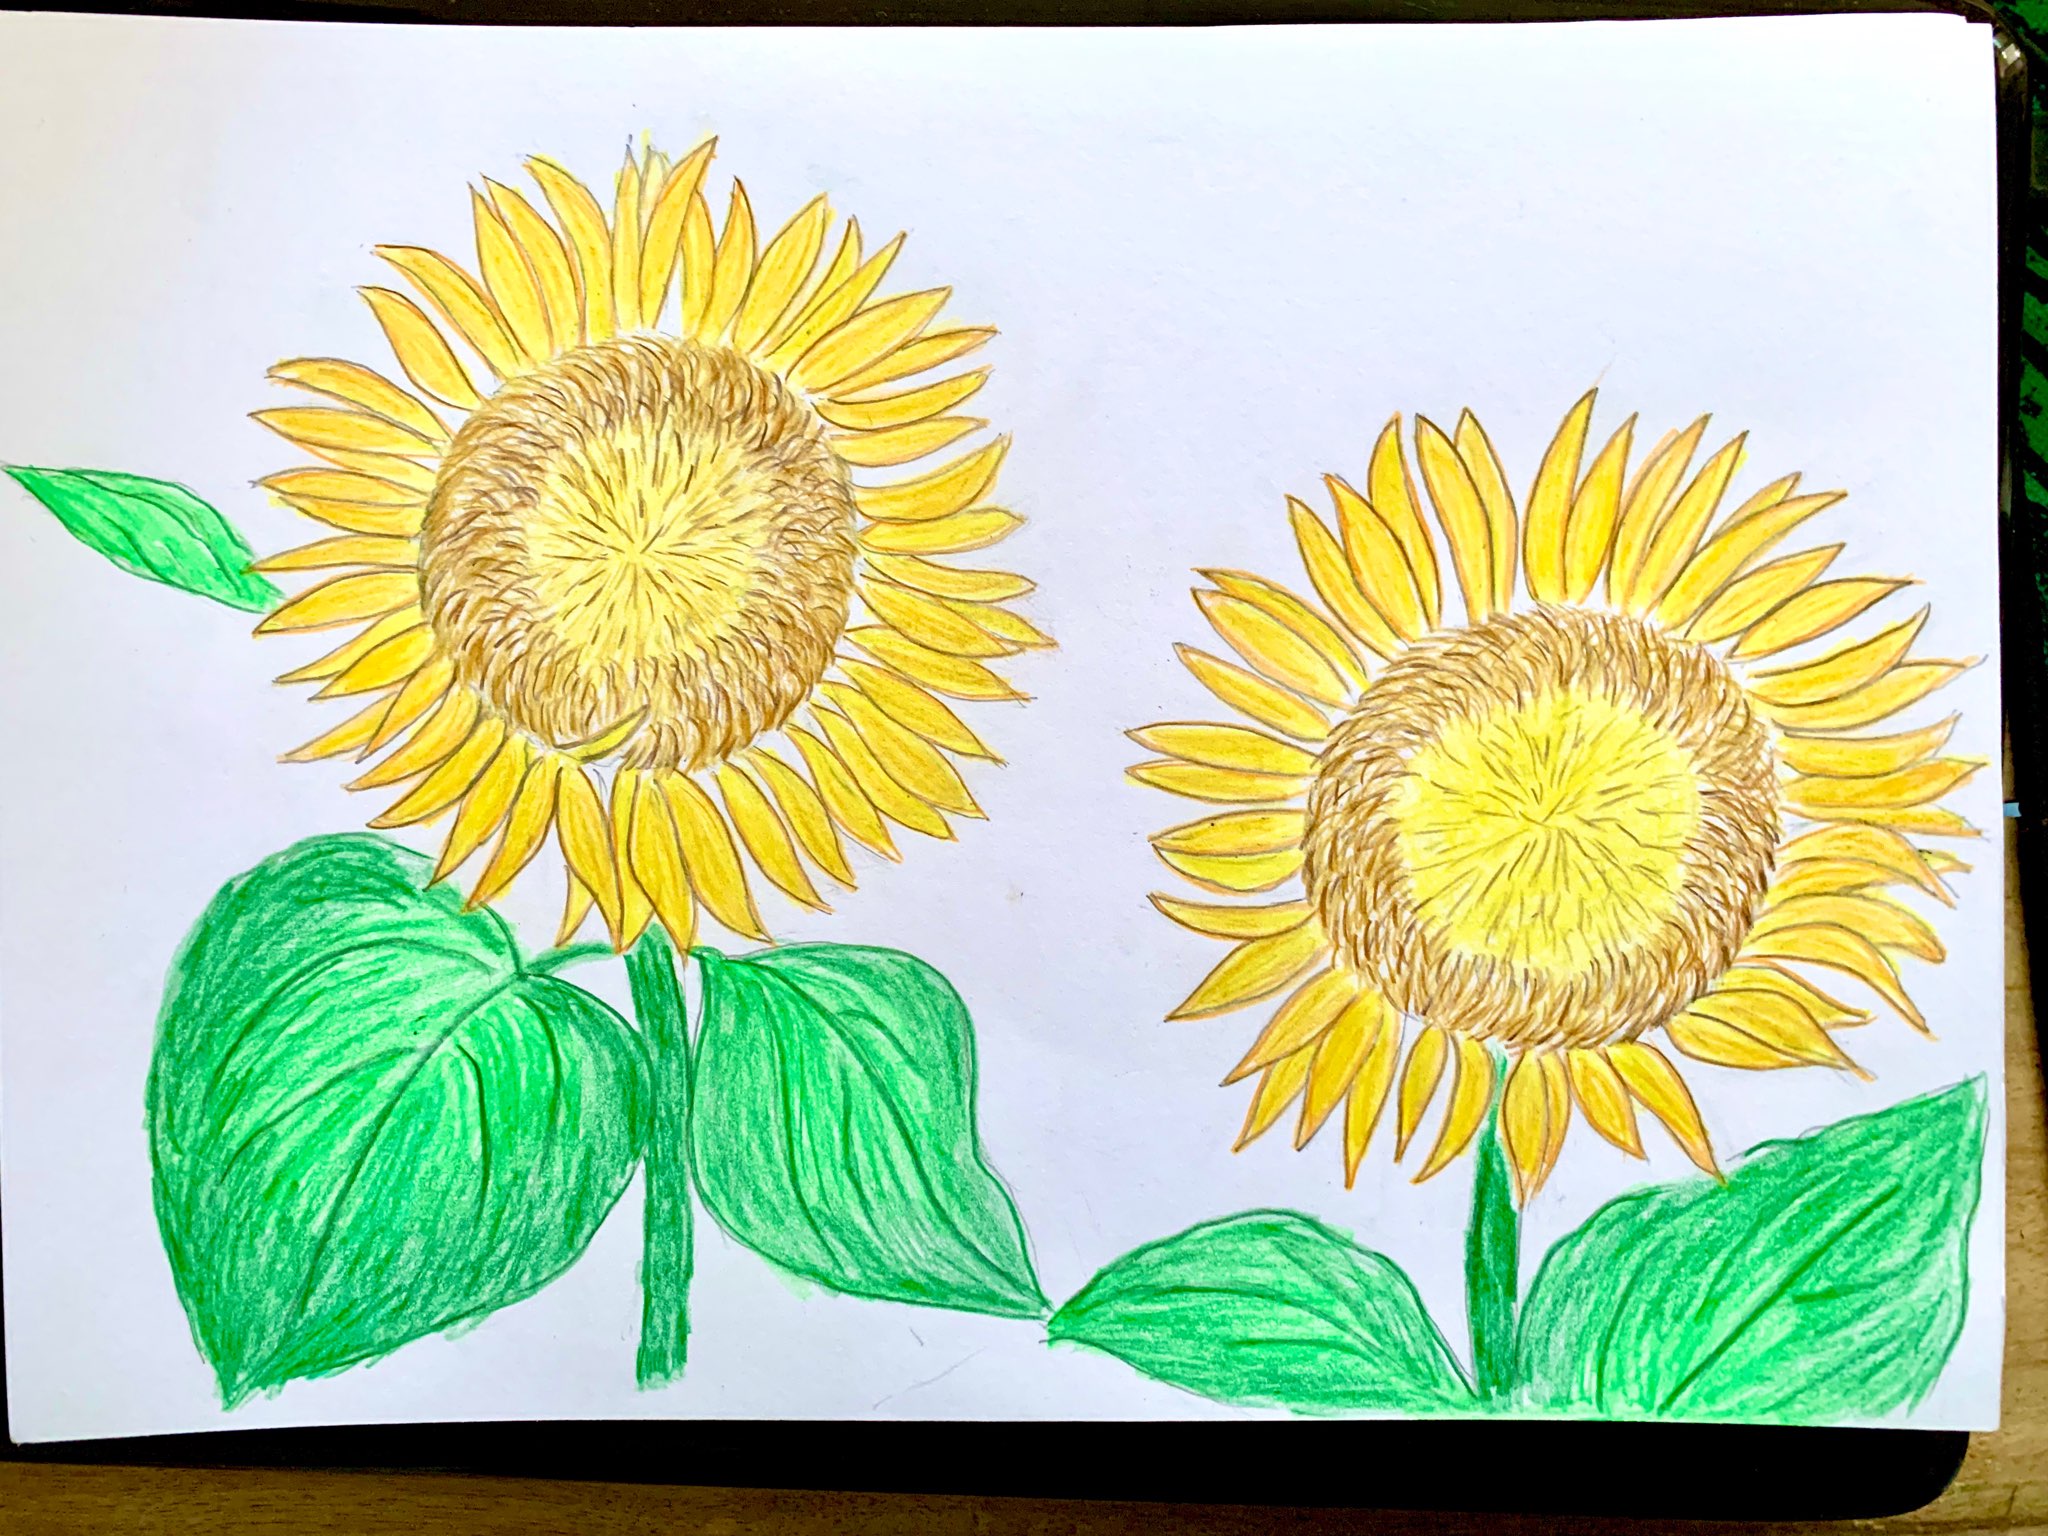 Với cách vẽ hoa hướng dương, bạn sẽ có một bức tranh đẹp mắt và tươi sáng cho ngôi nhà của mình. Hãy khám phá những phương pháp và kỹ thuật mới để tạo ra một chiếc hoa hướng dương độc đáo và đẹp như một bức tranh thật sự.